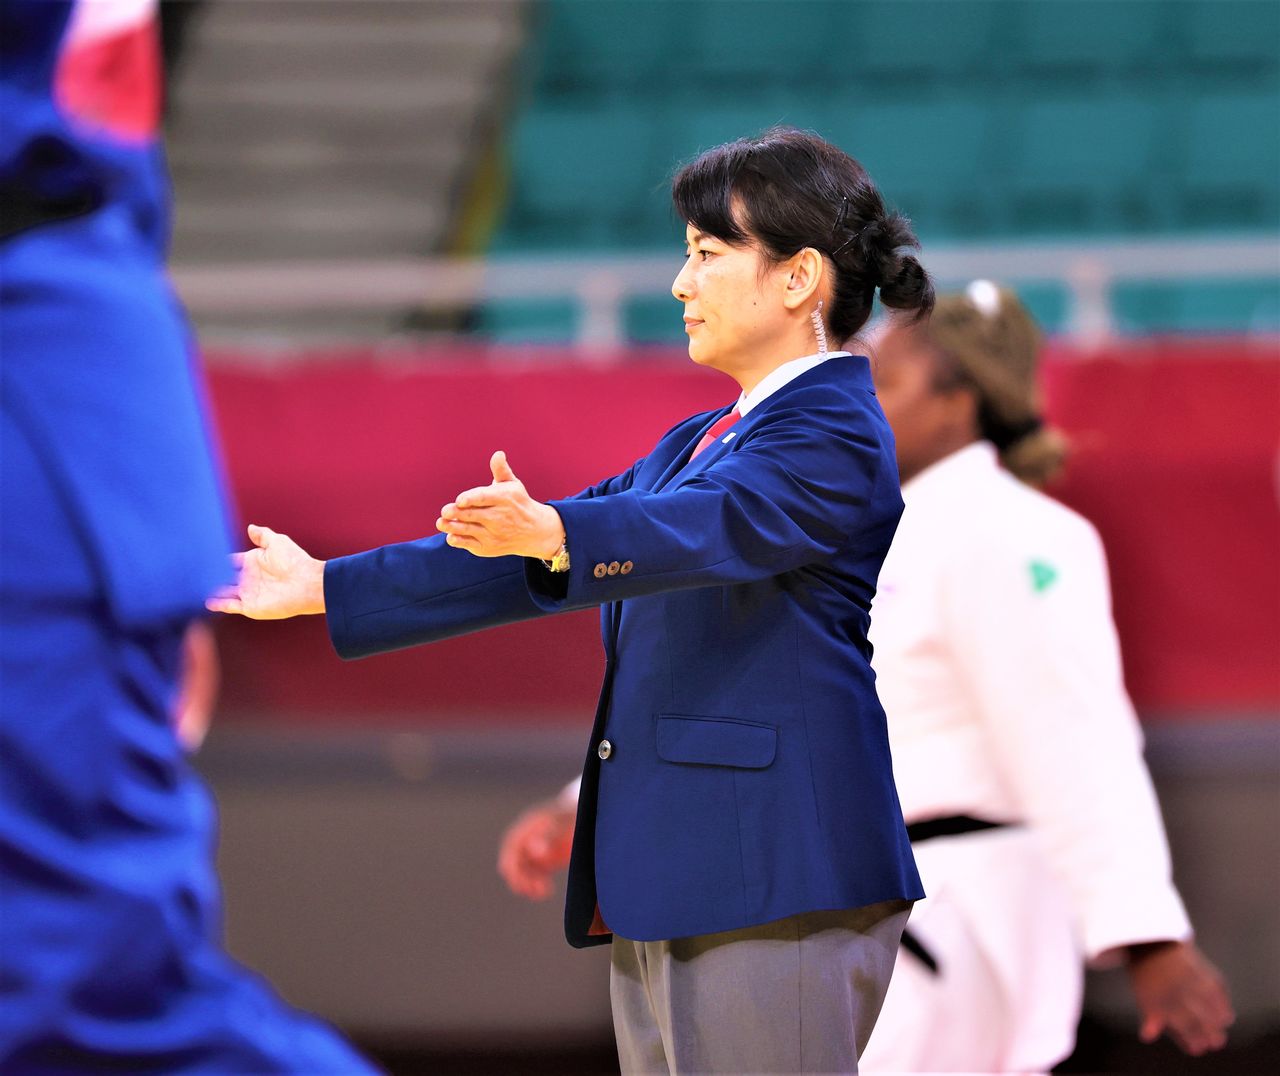 La árbitra de judo Amano Akiko durante los Juegos Olímpicos Tokio 2020. Ella misma es judōka del séptimo dan, además de estar al frente de la empresa de pirotecnia tradicional Kagiya, como responsable de decimoquinta generación. Fotografía tomada en el Nihon Budōkan de Tokio el 30 de julio de 2021. (Jiji Press) 